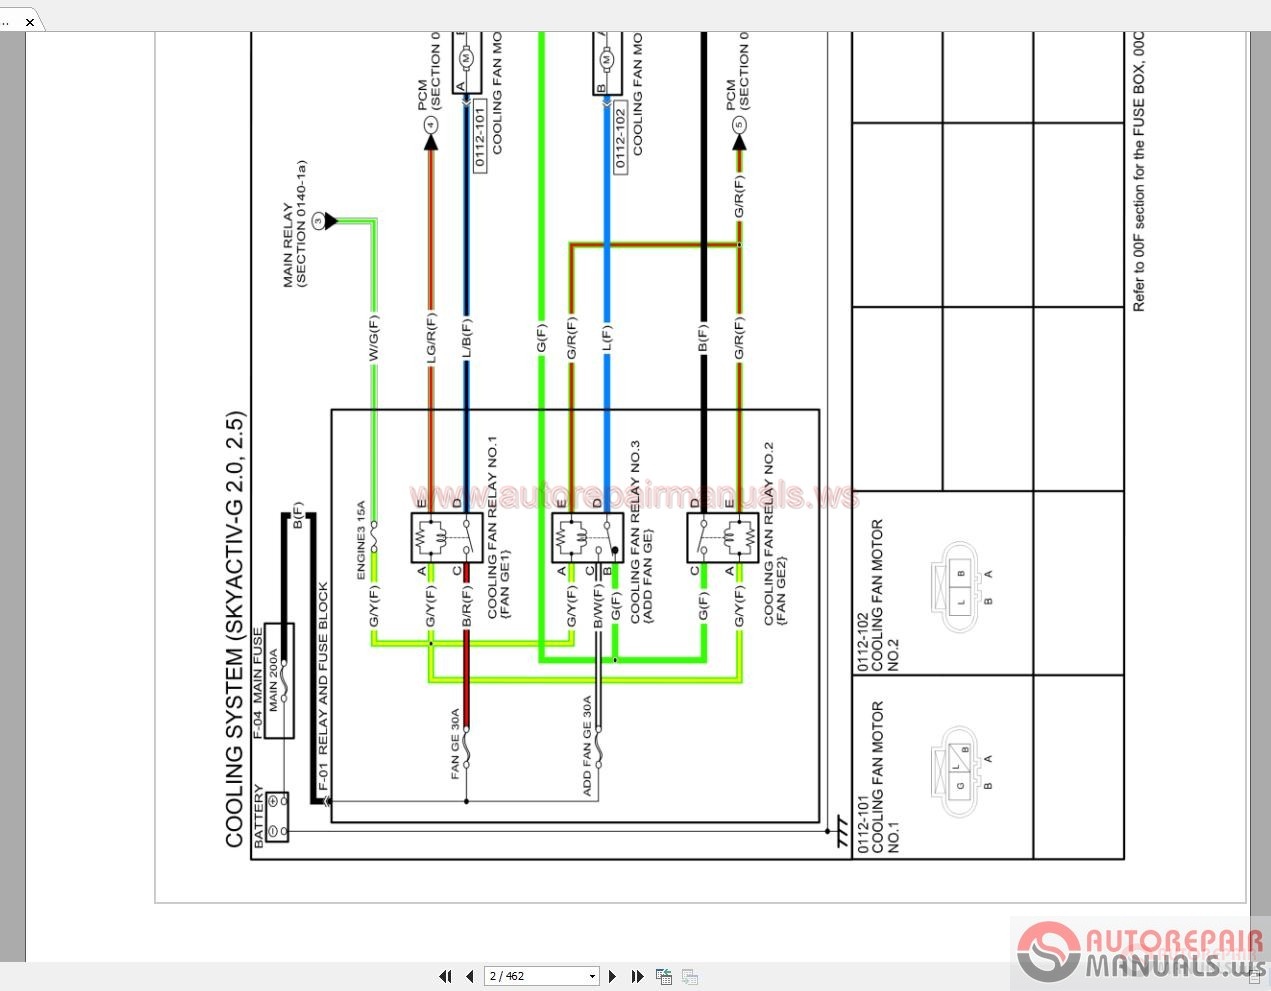 Mazda Cx-5 2016 4Wd 2.0-2.5 Wiring Diagram | Auto Repair Manual Forum -  Heavy Equipment Forums - Download Repair & Workshop Manual